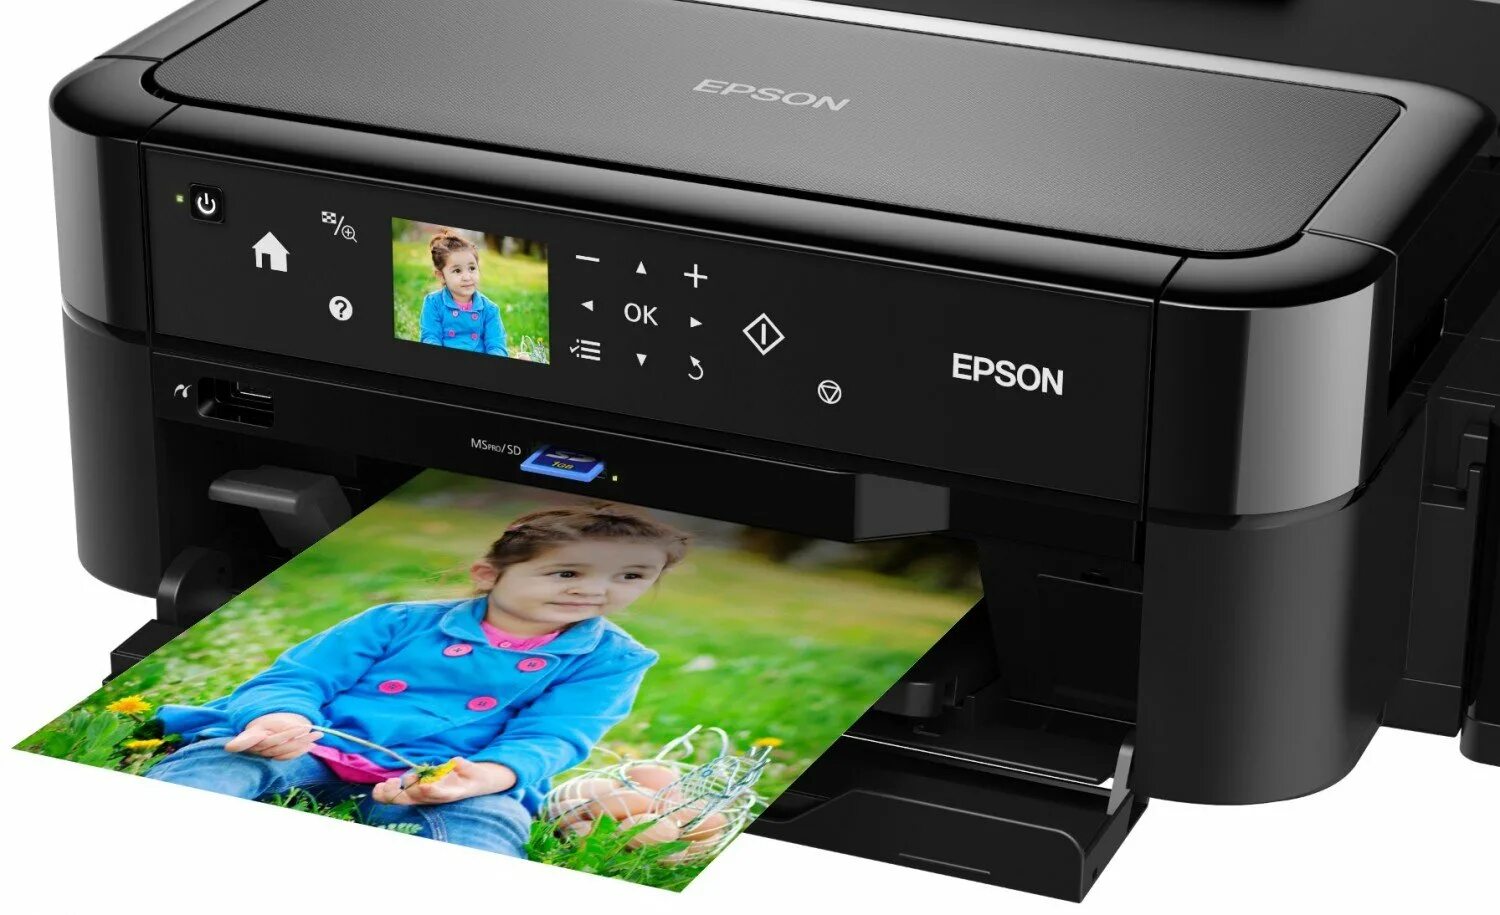 Принтер струйный Epson l810. Принтеры Эпсон 810. Epson 810 принтер цветной. Epson принтер Epson l810. Принтер дешевая печать